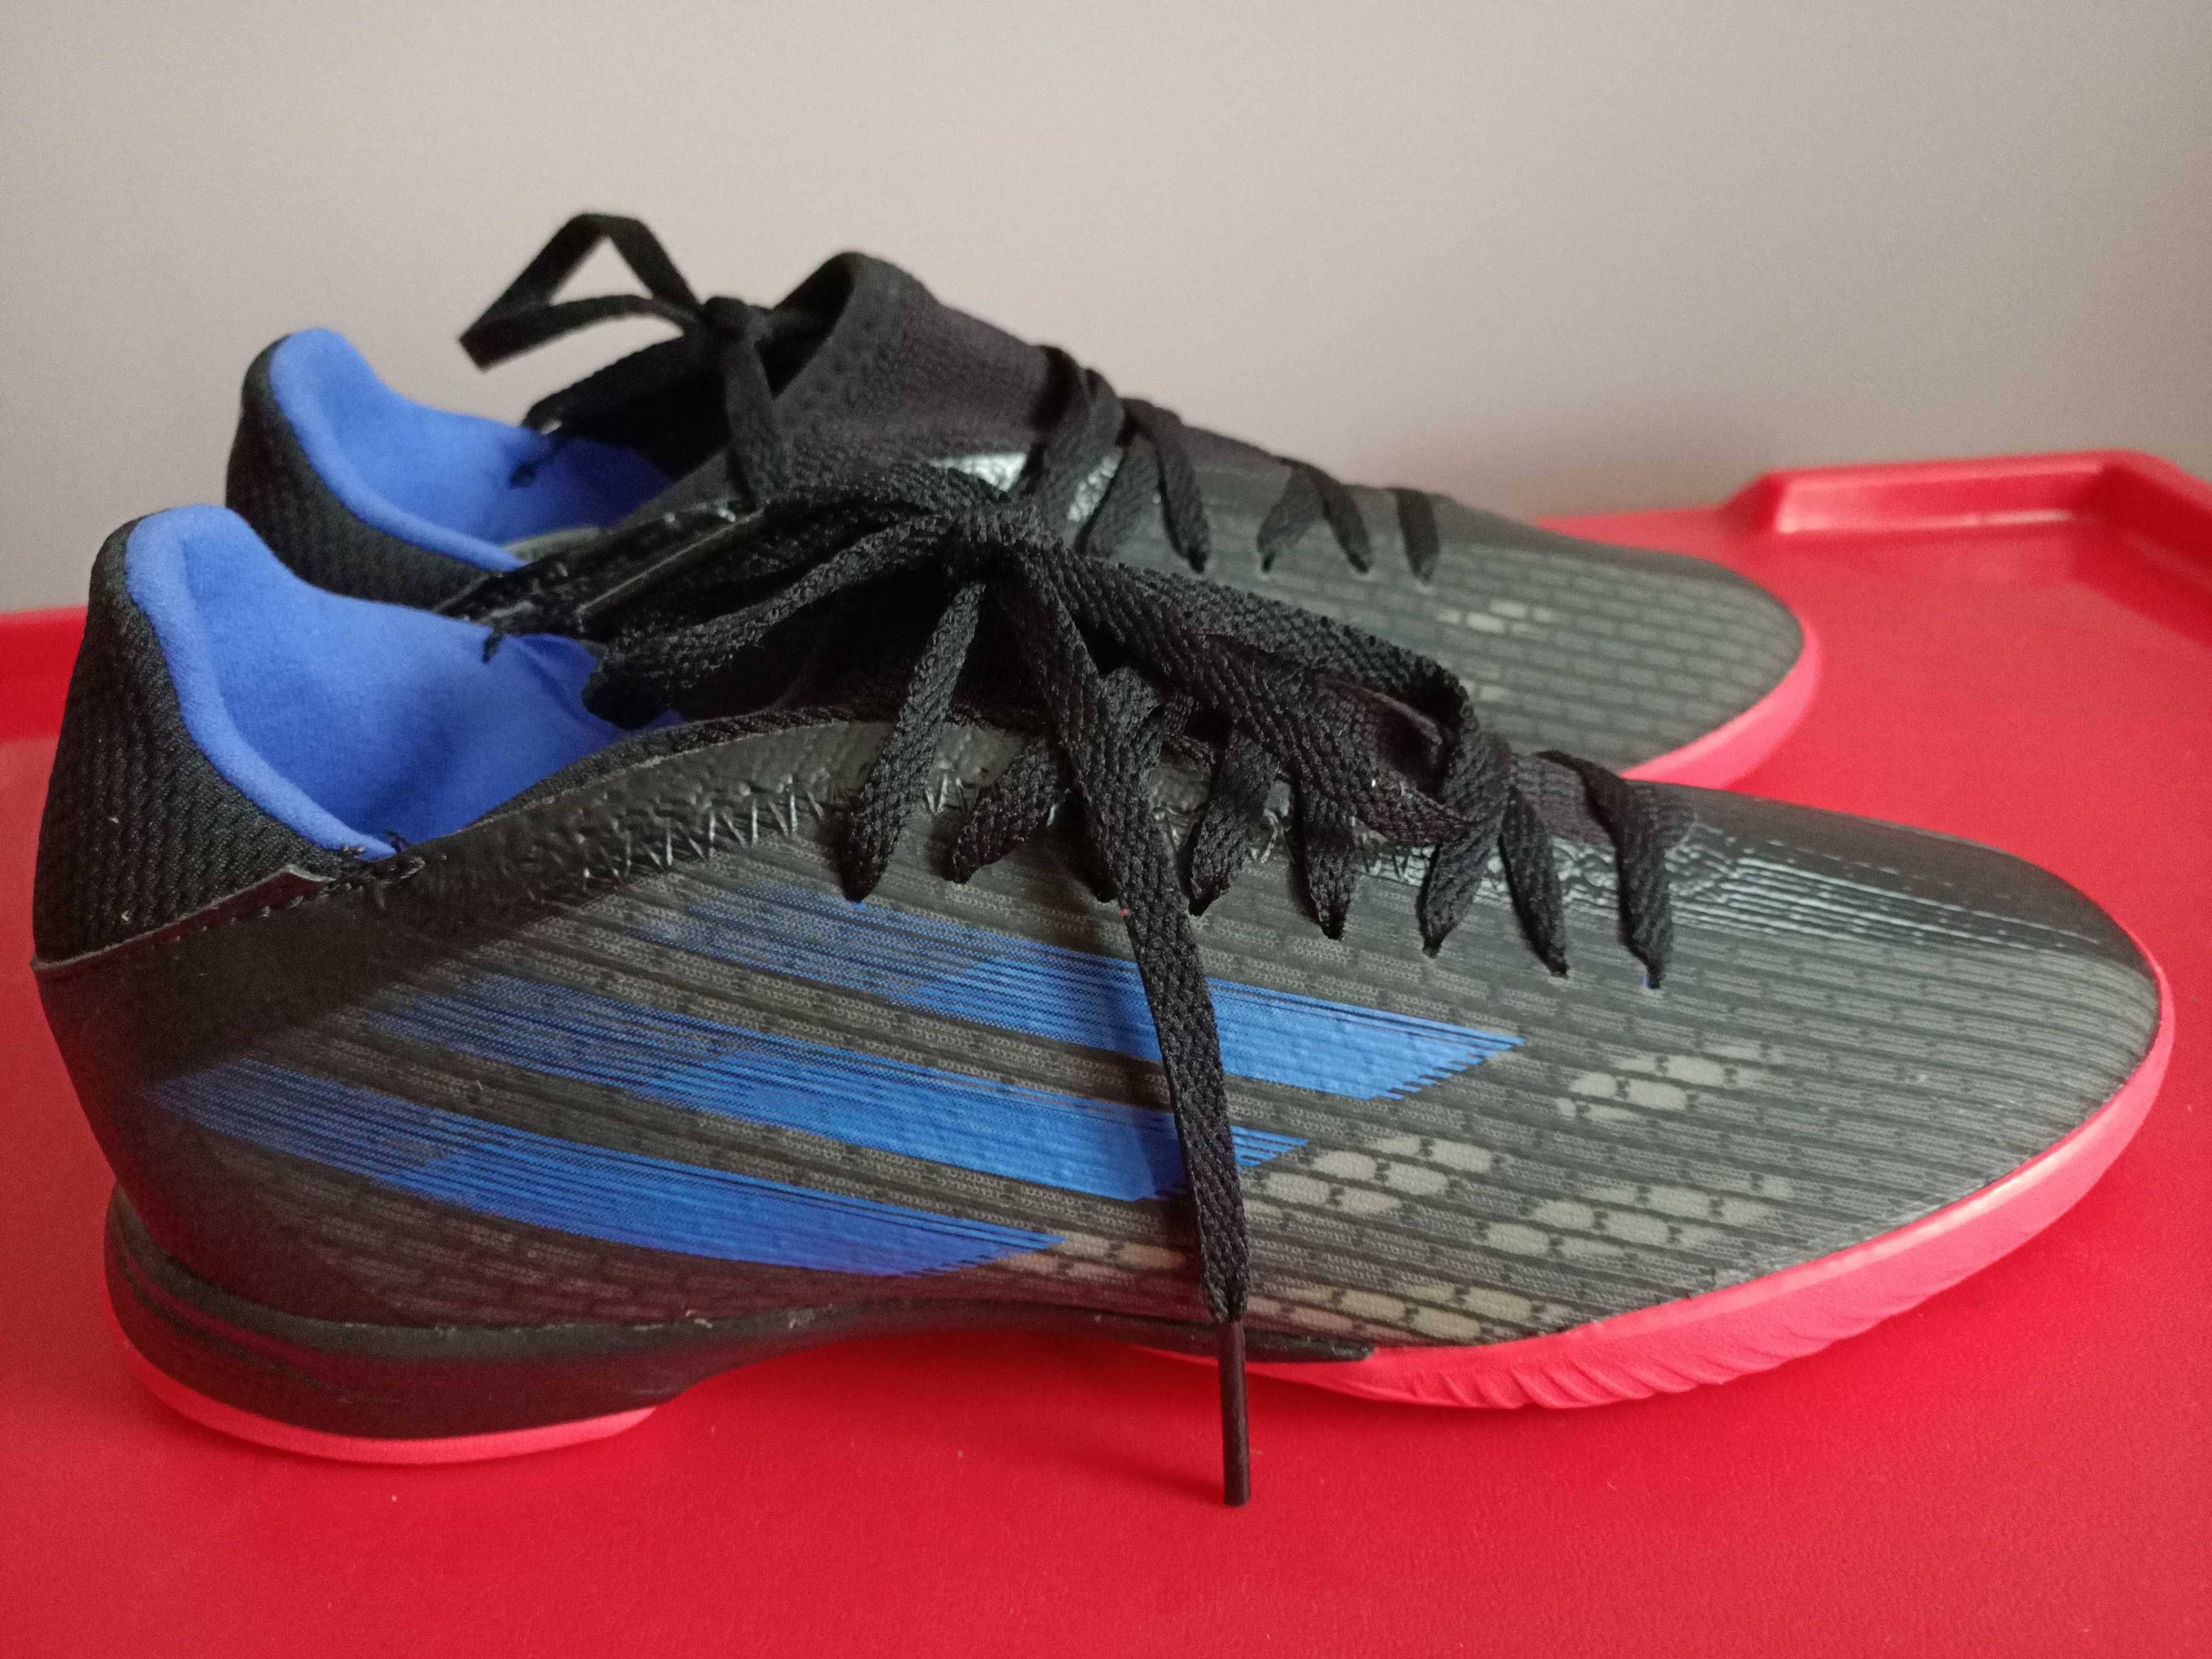 Adidas buty piłkarskie halowe Speedflow FY3303, rozm. 40